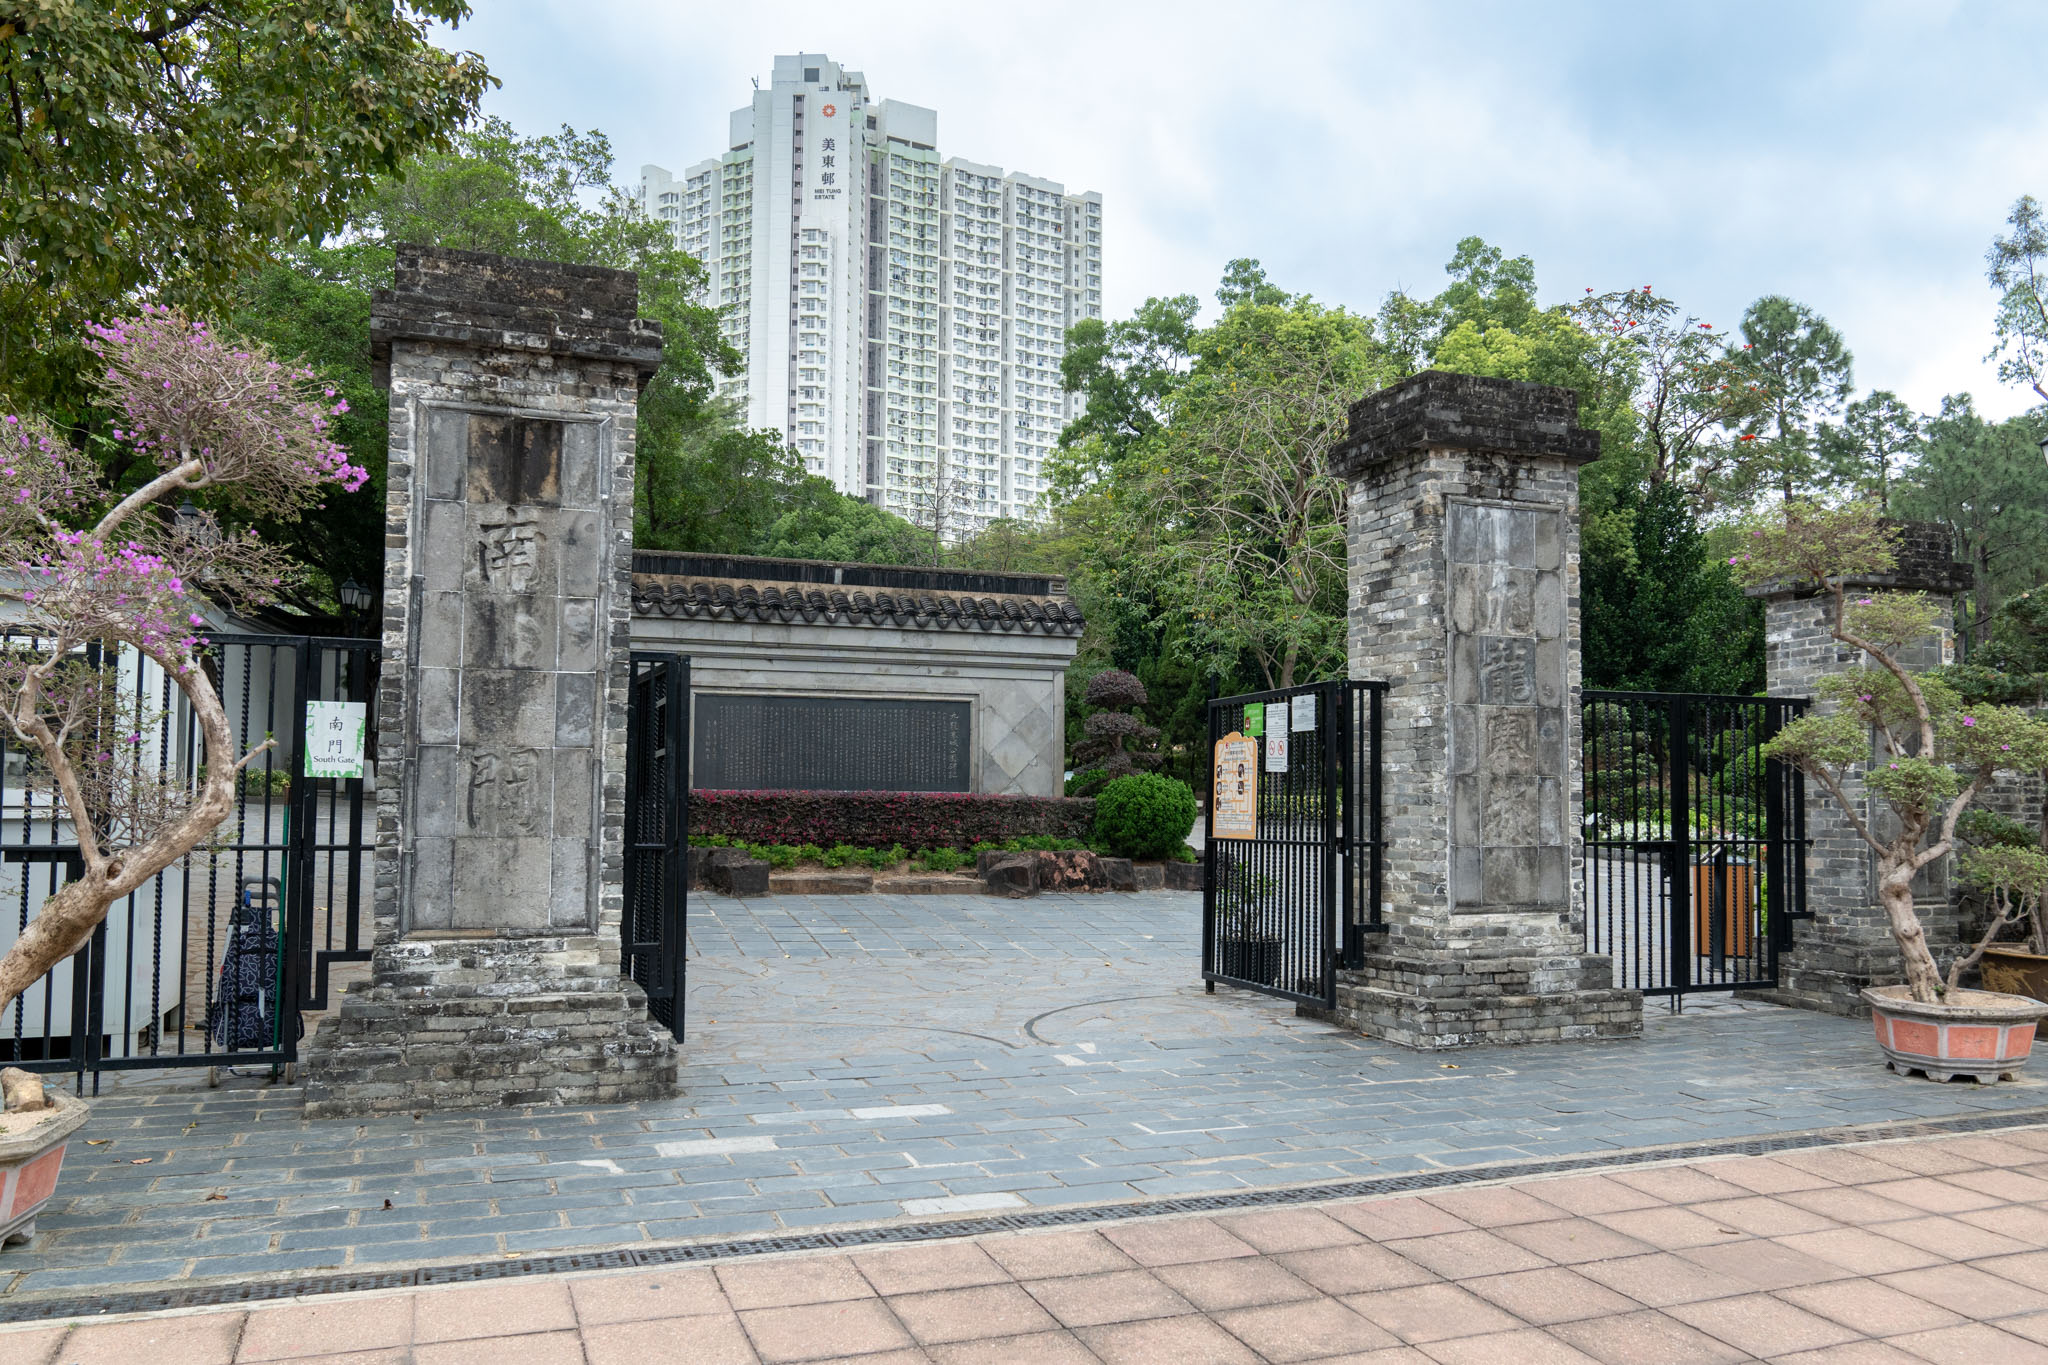 1987年港府宣布清拆九龍寨城；1995年，遺址建成九龍寨城公園。